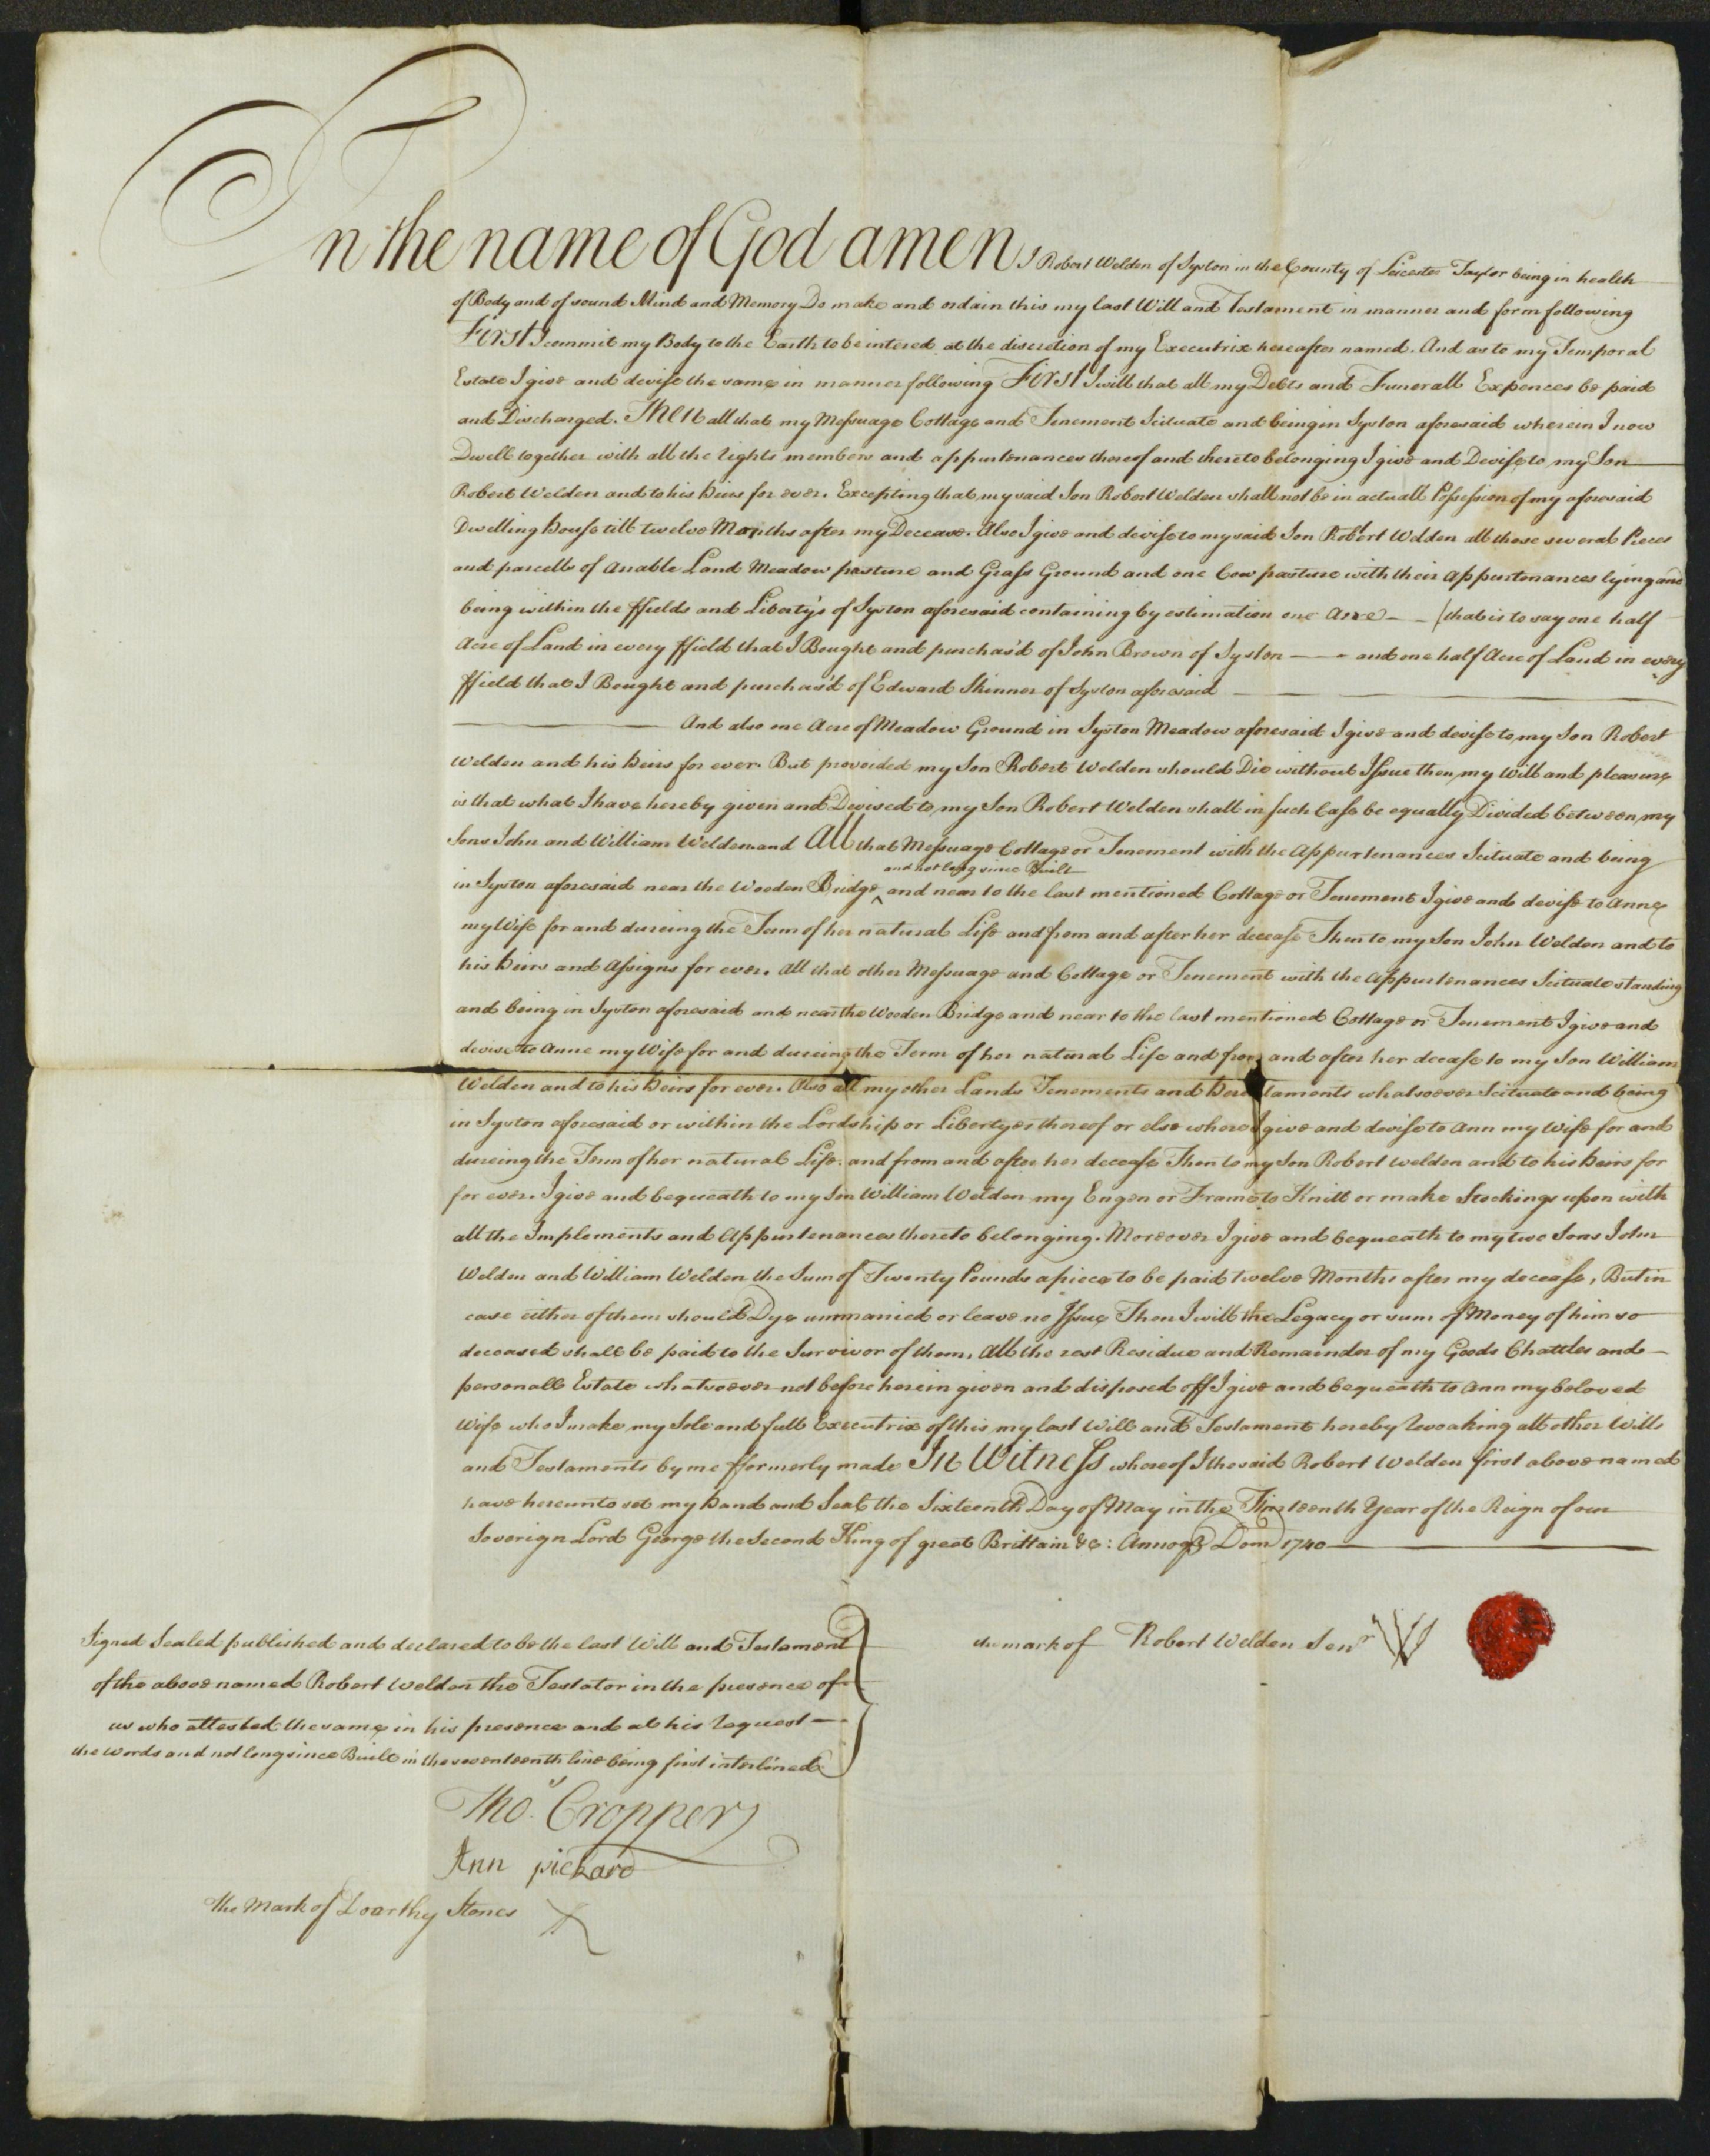 Robert's will of 1740